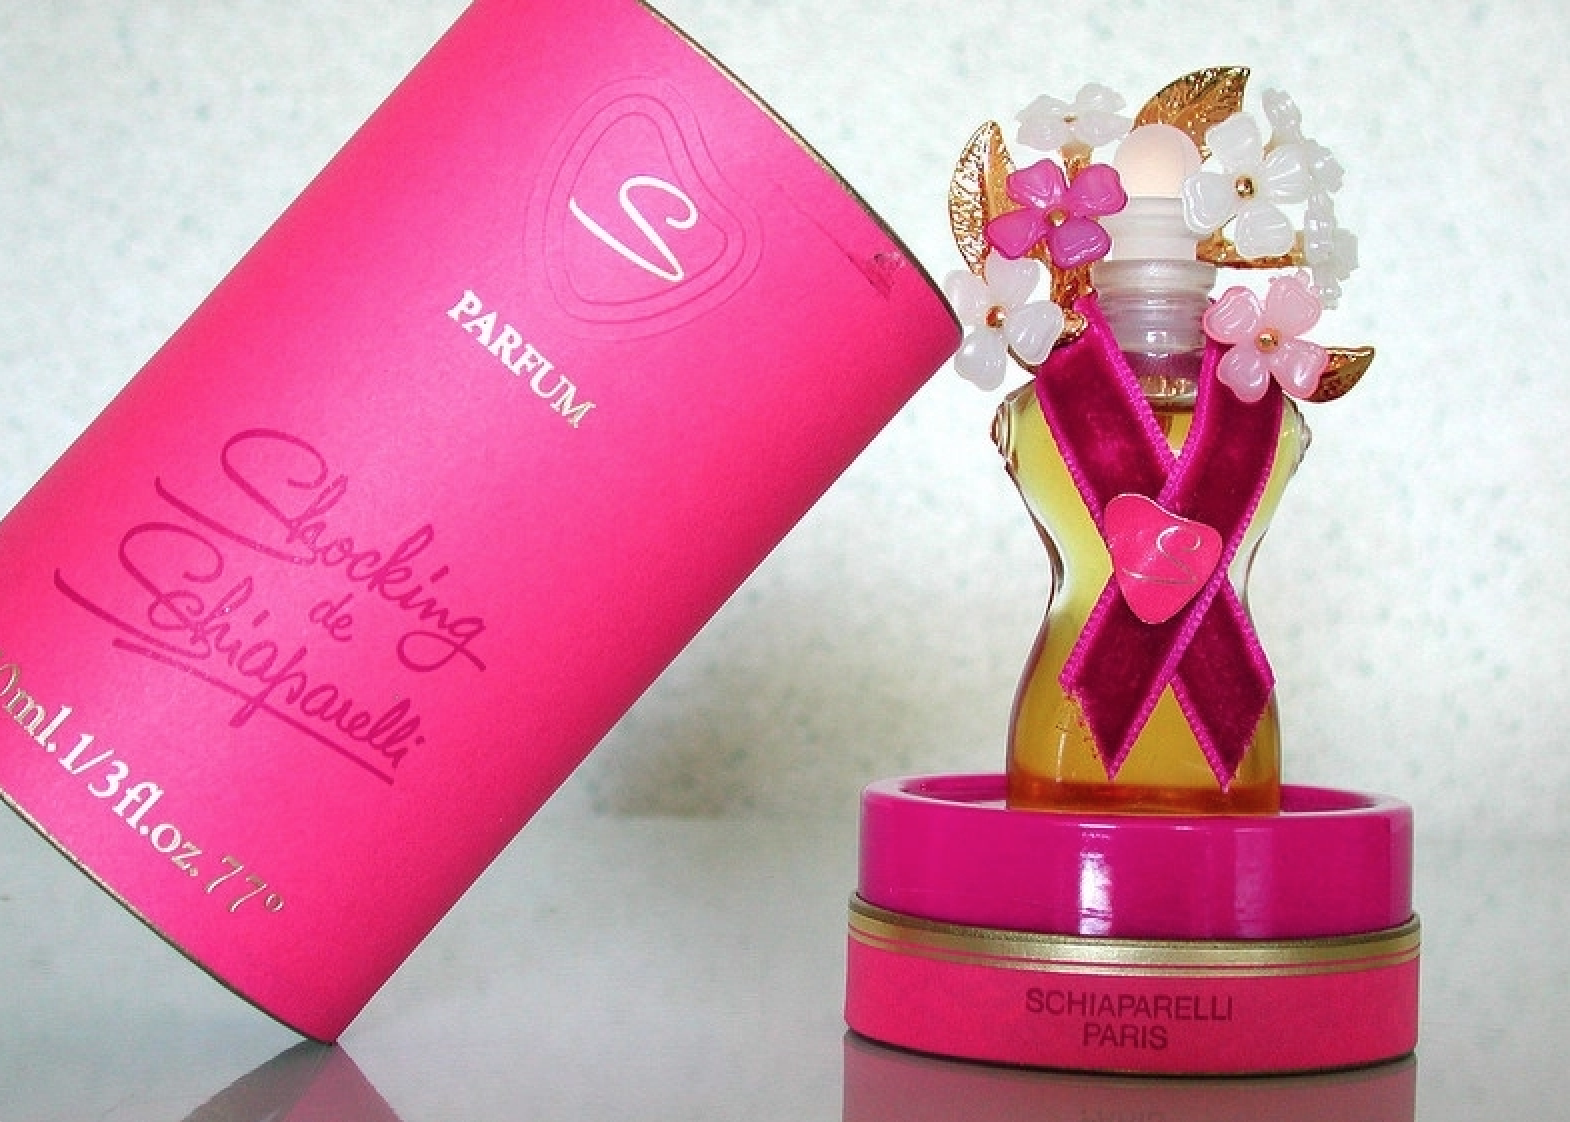 A embalagem do perfume que batizou o pigmento rosado / Foto: Reprodução